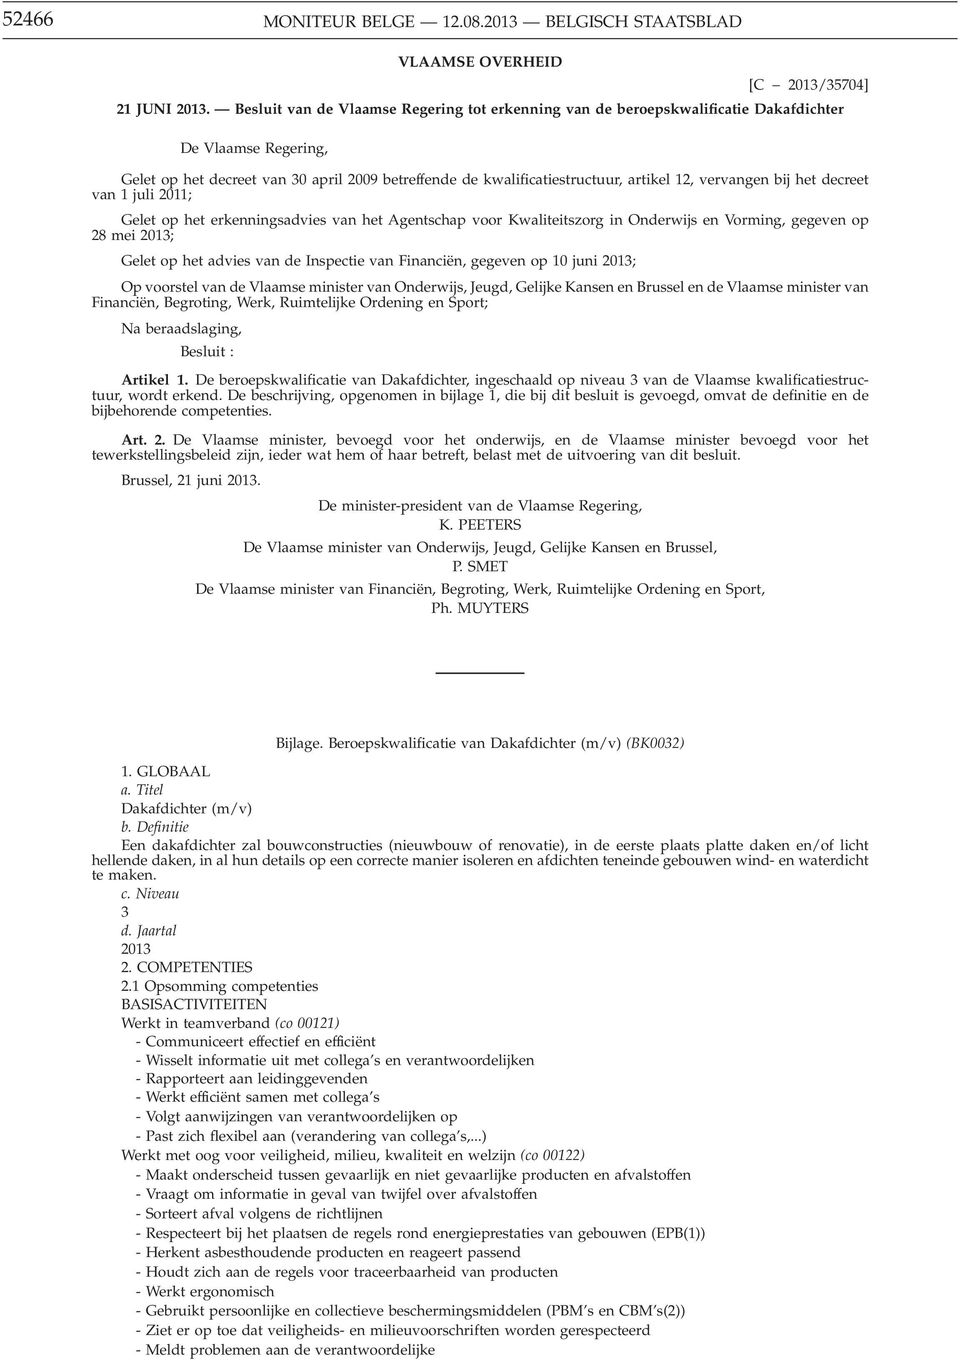 vervangen bij het decreet van 1 juli 2011; Gelet op het erkenningsadvies van het Agentschap voor Kwaliteitszorg in Onderwijs en Vorming, gegeven op 28 mei 2013; Gelet op het advies van de Inspectie